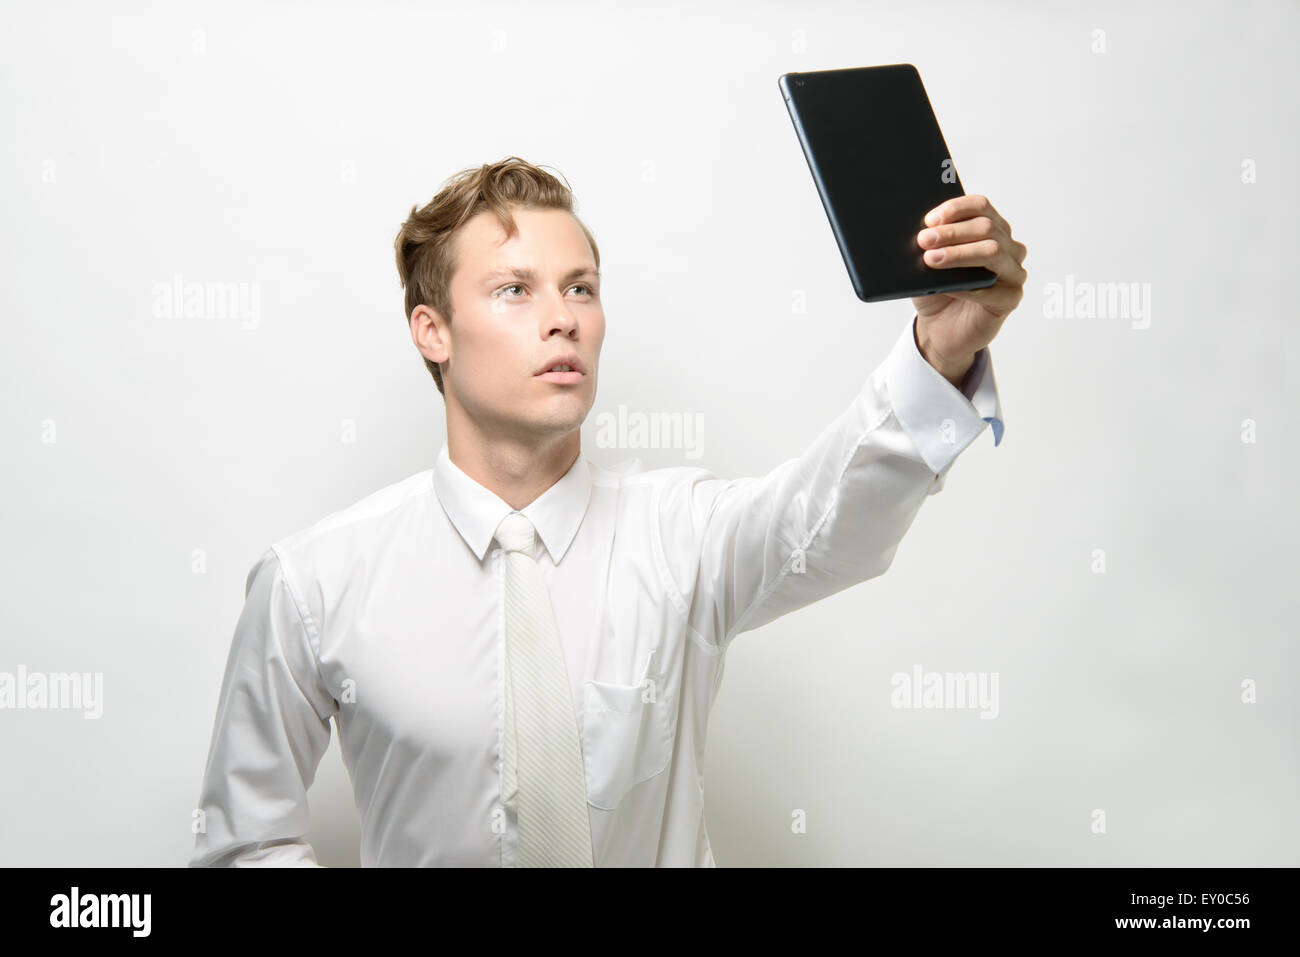 Un bel giovane uomo prendendo un selfie con un ipad/tablet. Indossa un abito bianco, pulire un concept futuristico. Foto Stock